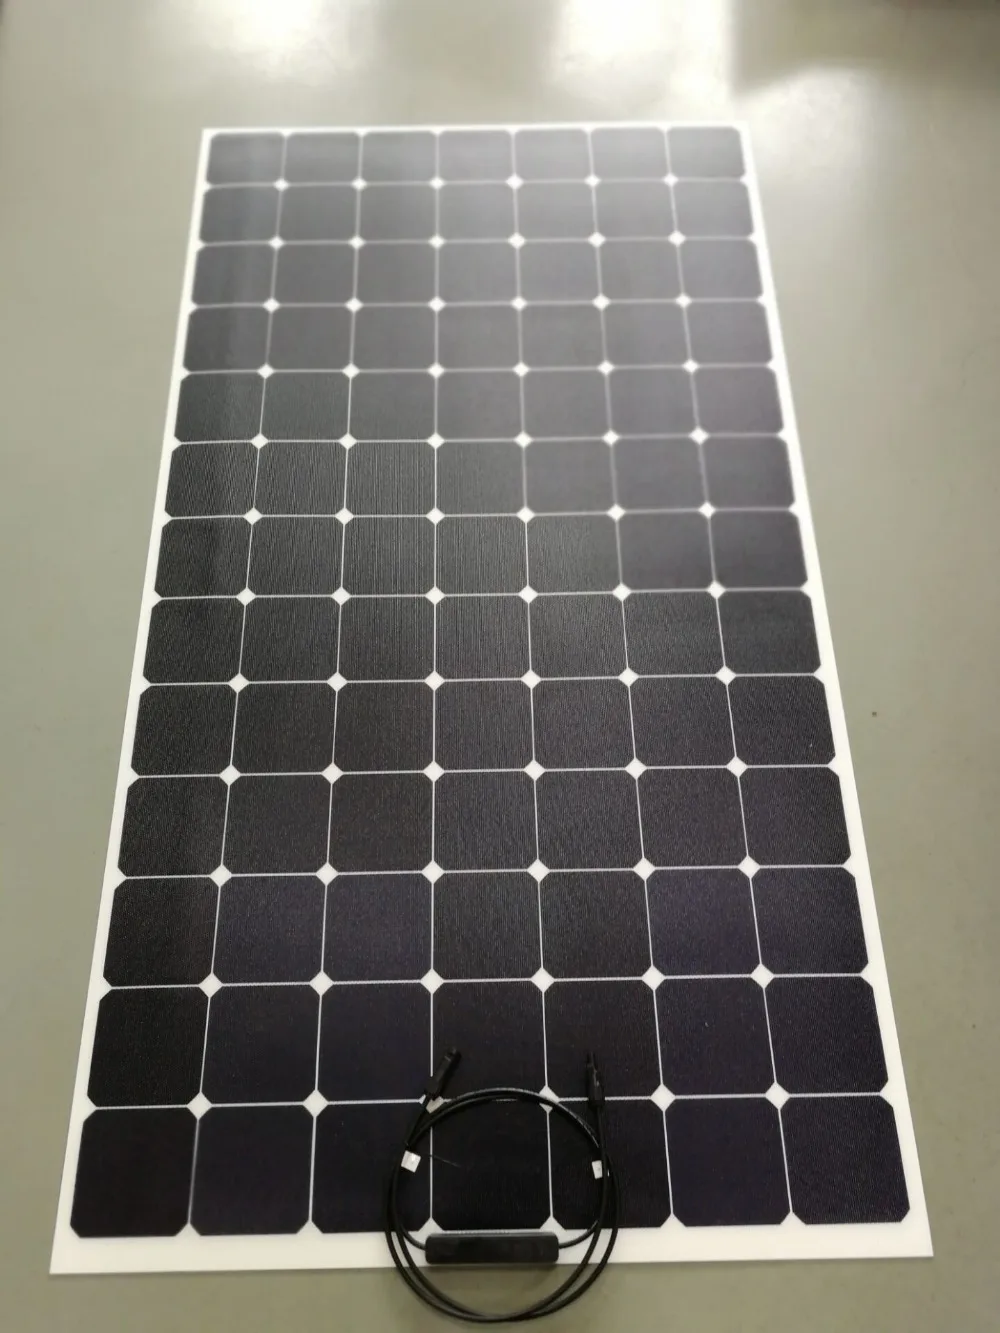 Солнечных батарей ЭТФЭ гибкие Панель 210 Вт 200 Вт 300 Вт SEMI Солнечная энергия солнечная панель 1445 мм* 800 мм 36V 24V зарядное устройство на солнечных батареях